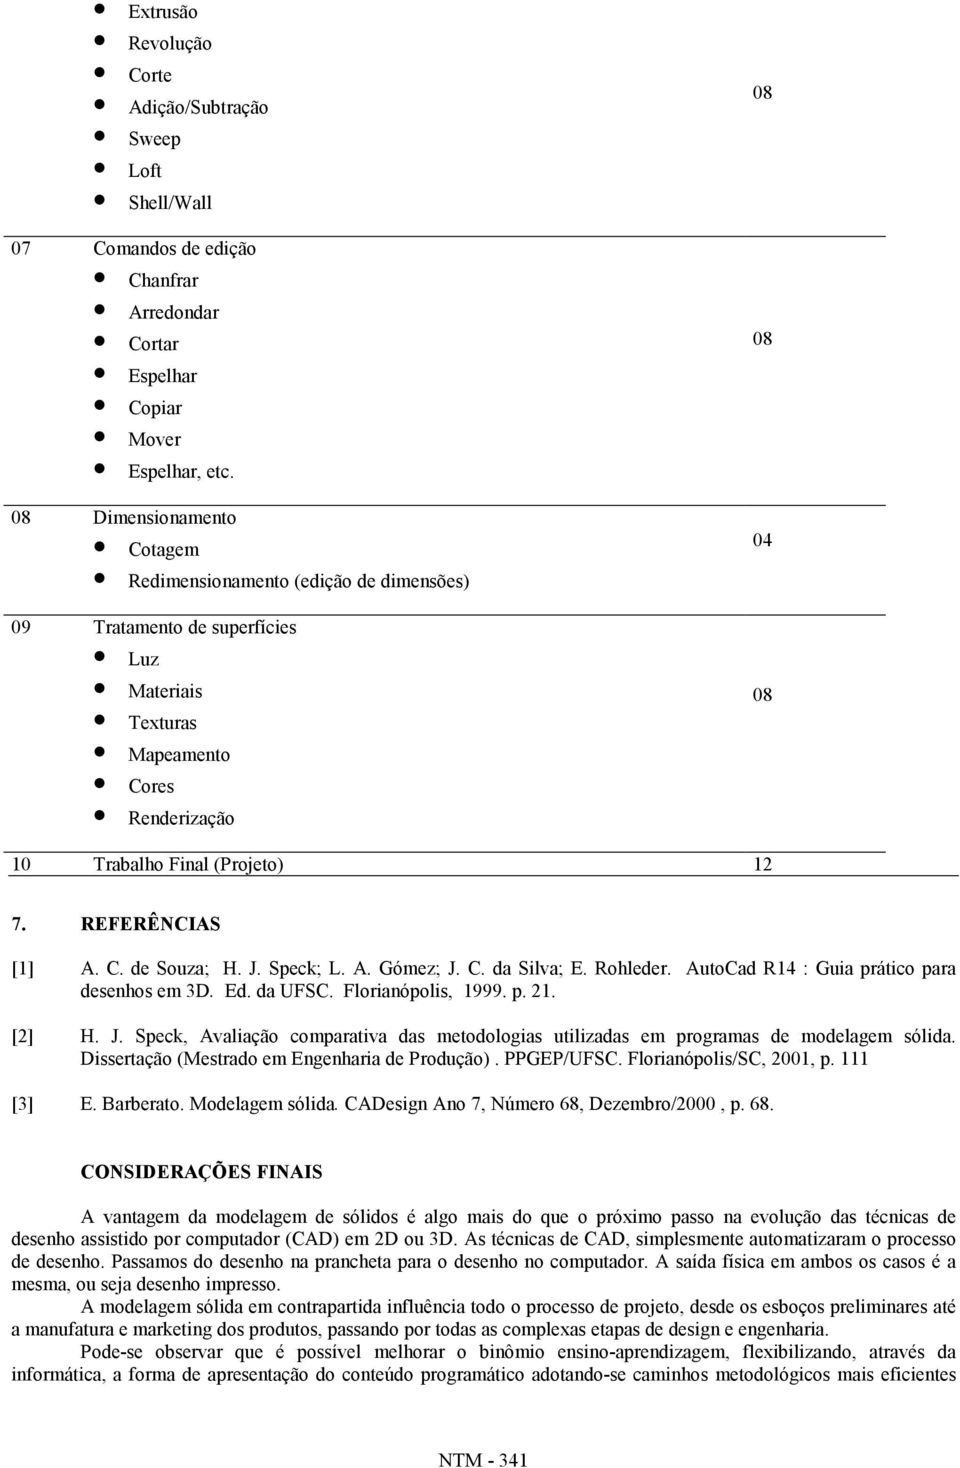 REFERÊNCIAS [1] A. C. de Souza; H. J. Speck; L. A. Gómez; J. C. da Silva; E. Rohleder. AutoCad R14 : Guia prático para desenhos em 3D. Ed. da UF Florianópolis, 1999. p. 21. [2] H. J. Speck, Avaliação comparativa das metodologias utilizadas em programas de modelagem sólida.